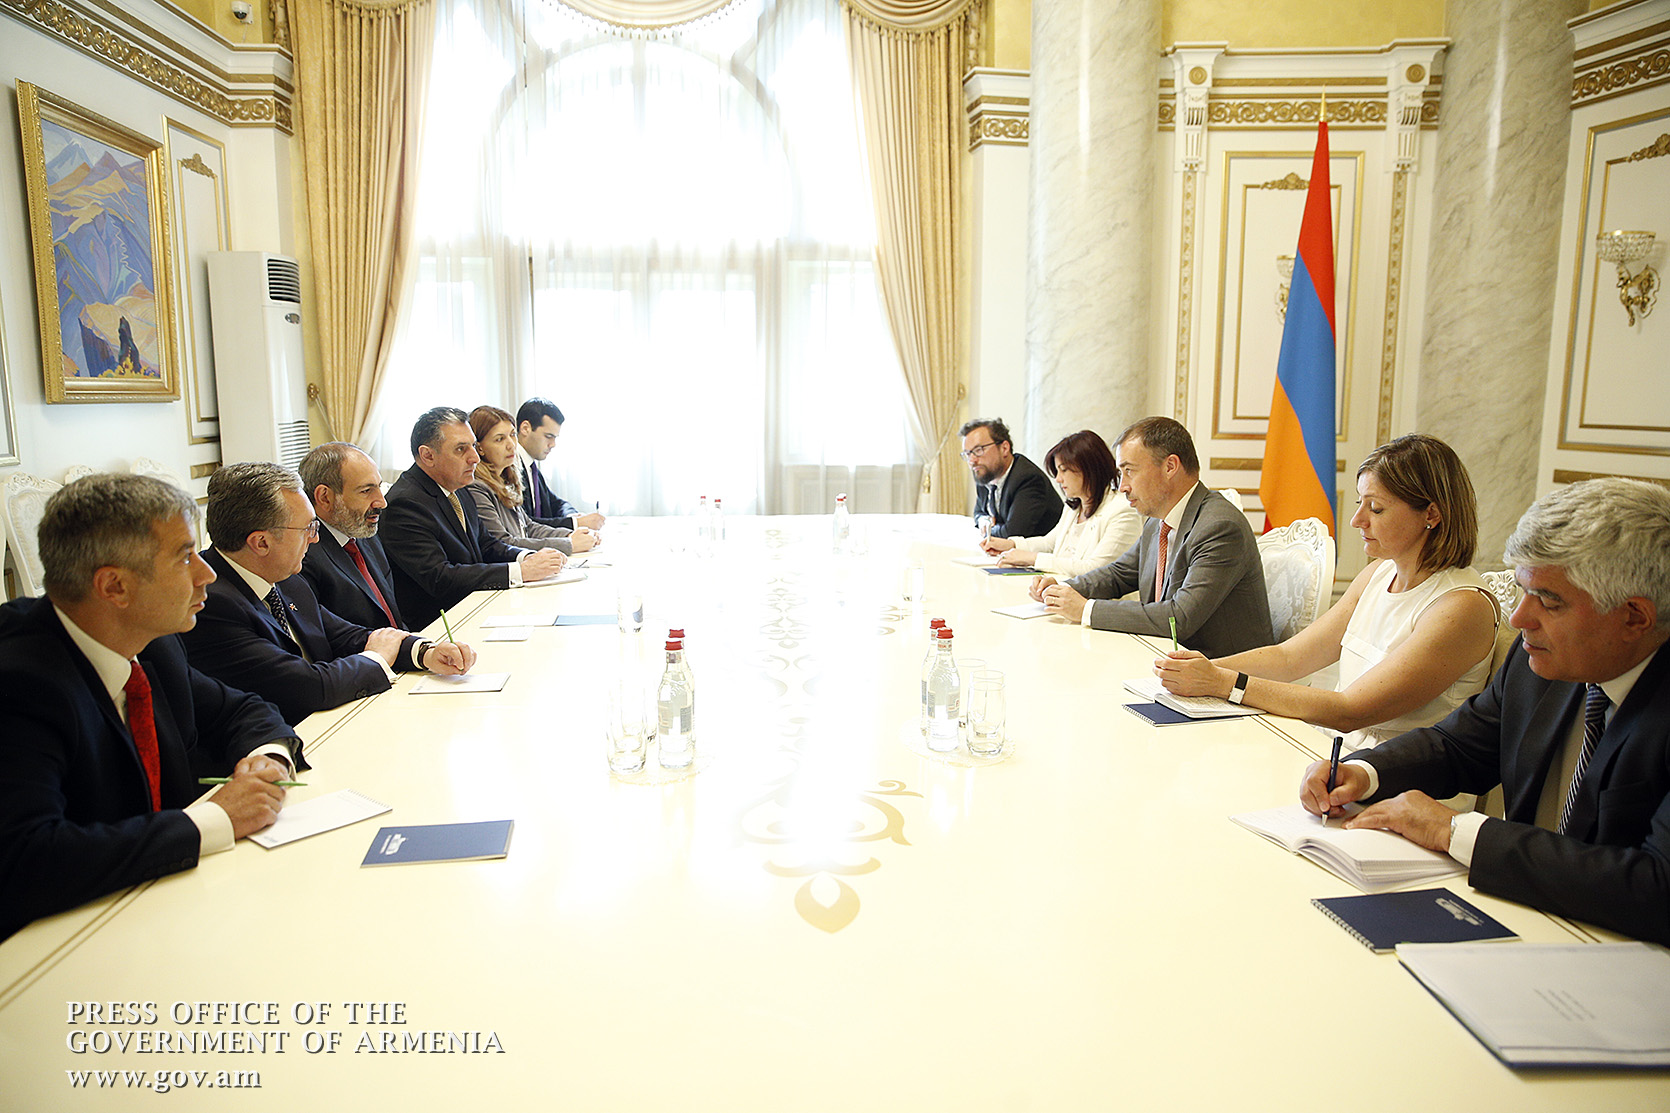 ЕС готов и впредь помогать Армении в достижении прогресса в различных сферах: Тойво Клаар в Ереване